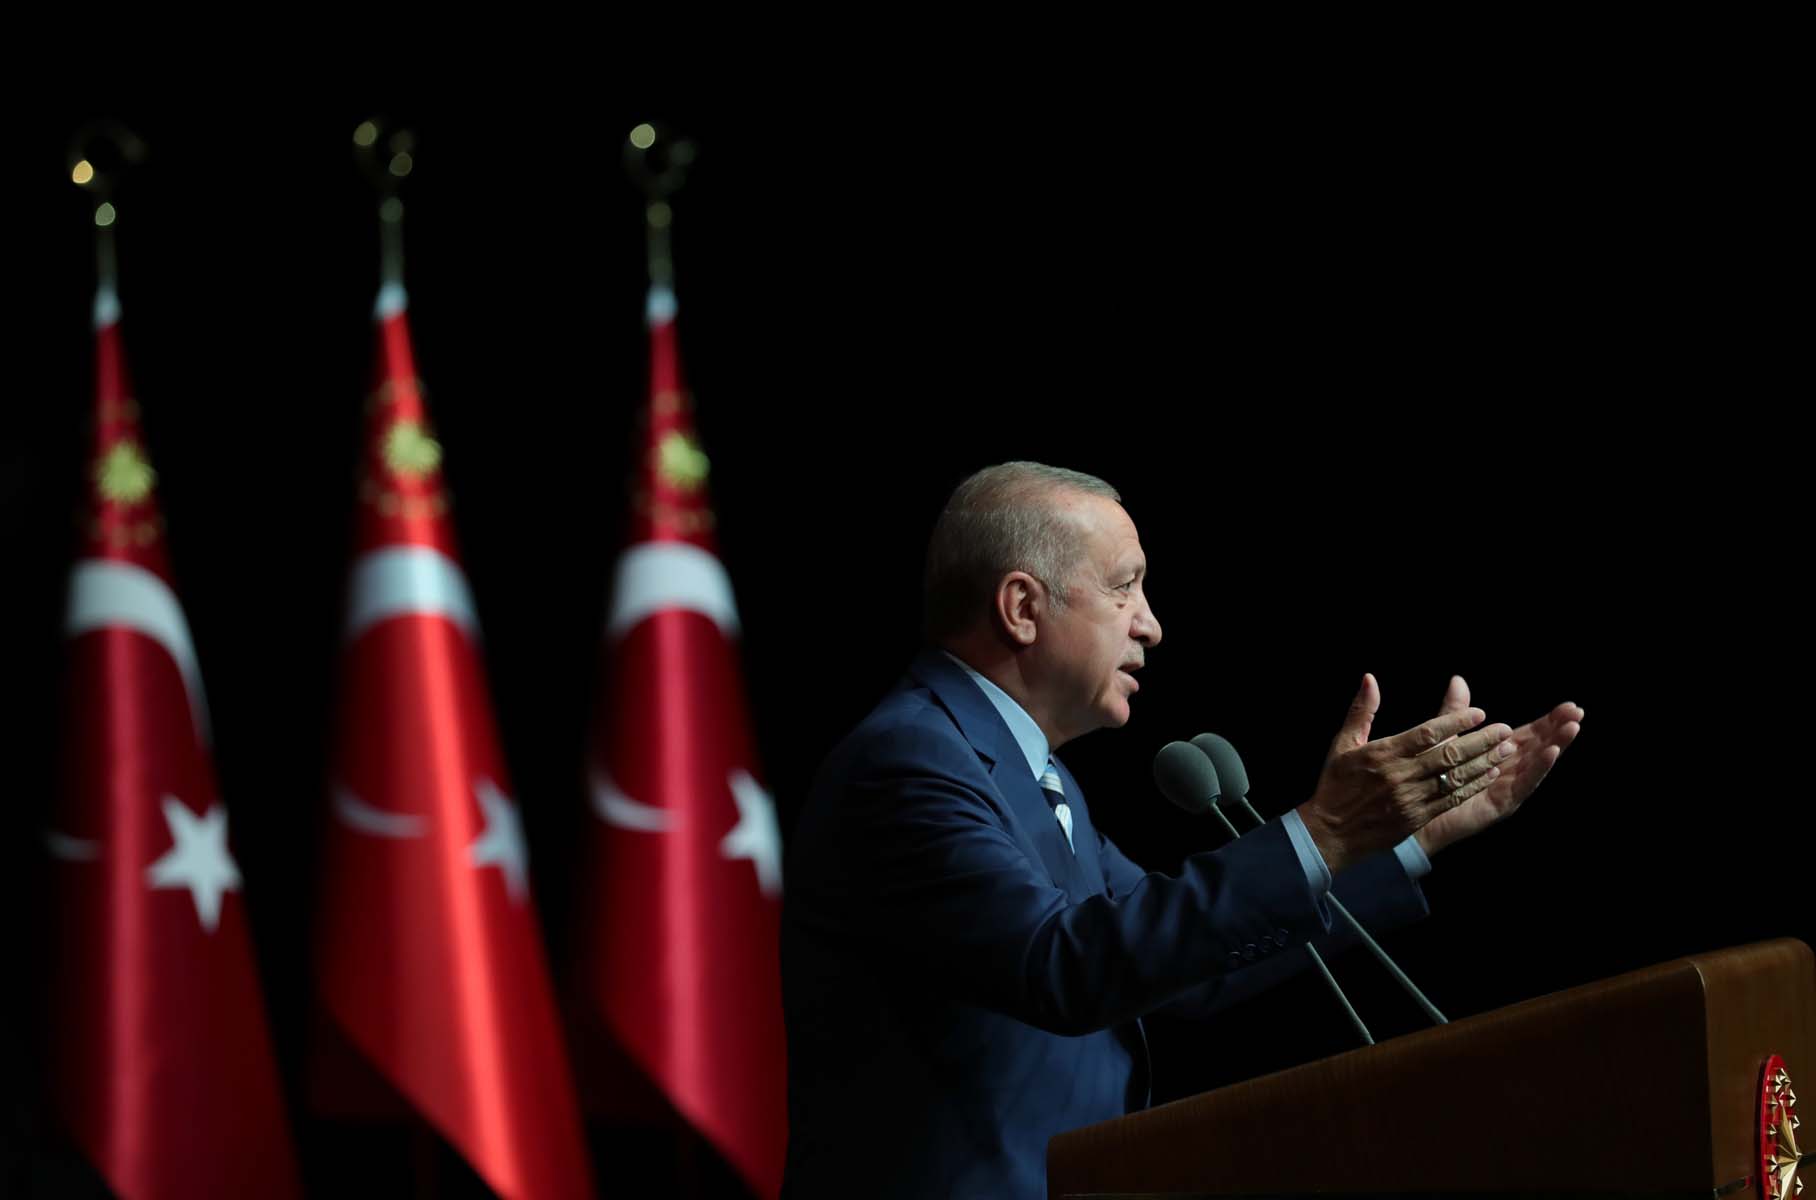 Cumhurbaşkanı Erdoğan, 6 .Uluslararası İyilik Ödülleri töreninde konuştu! Diyarbakır annelerinin kapısını çalmaktan korkan siyasetçi müsveddelerini de gördük 